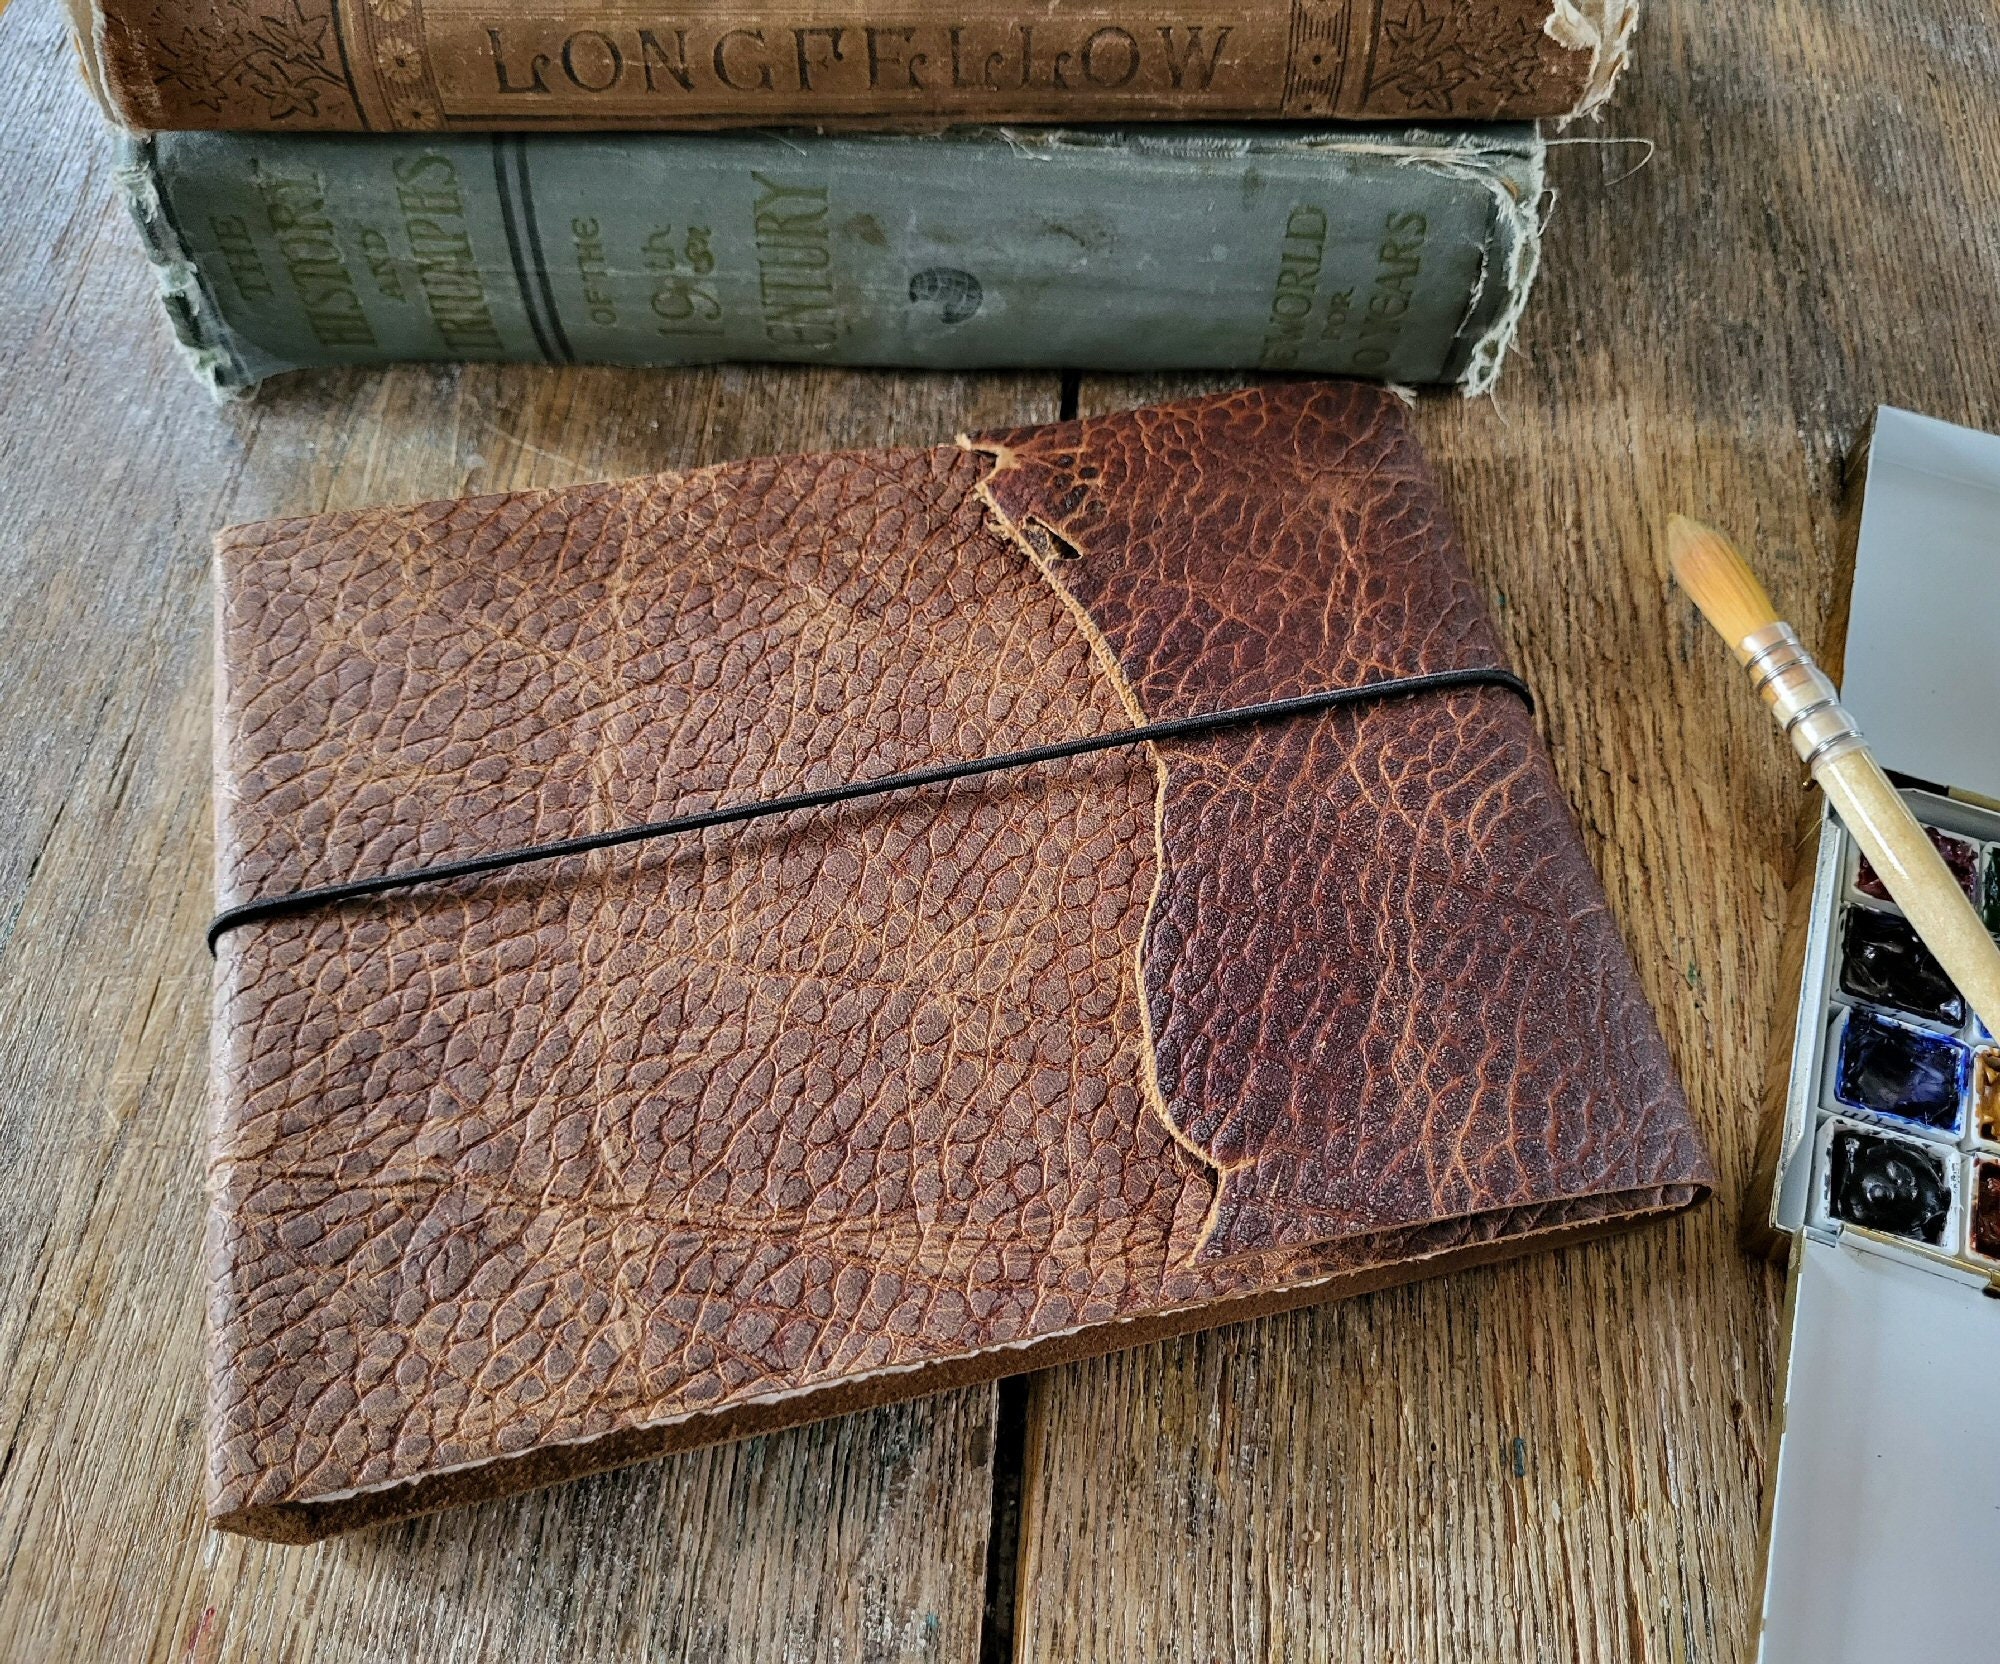 Leather-bound Camarilla Journal / Sketchbook Brown